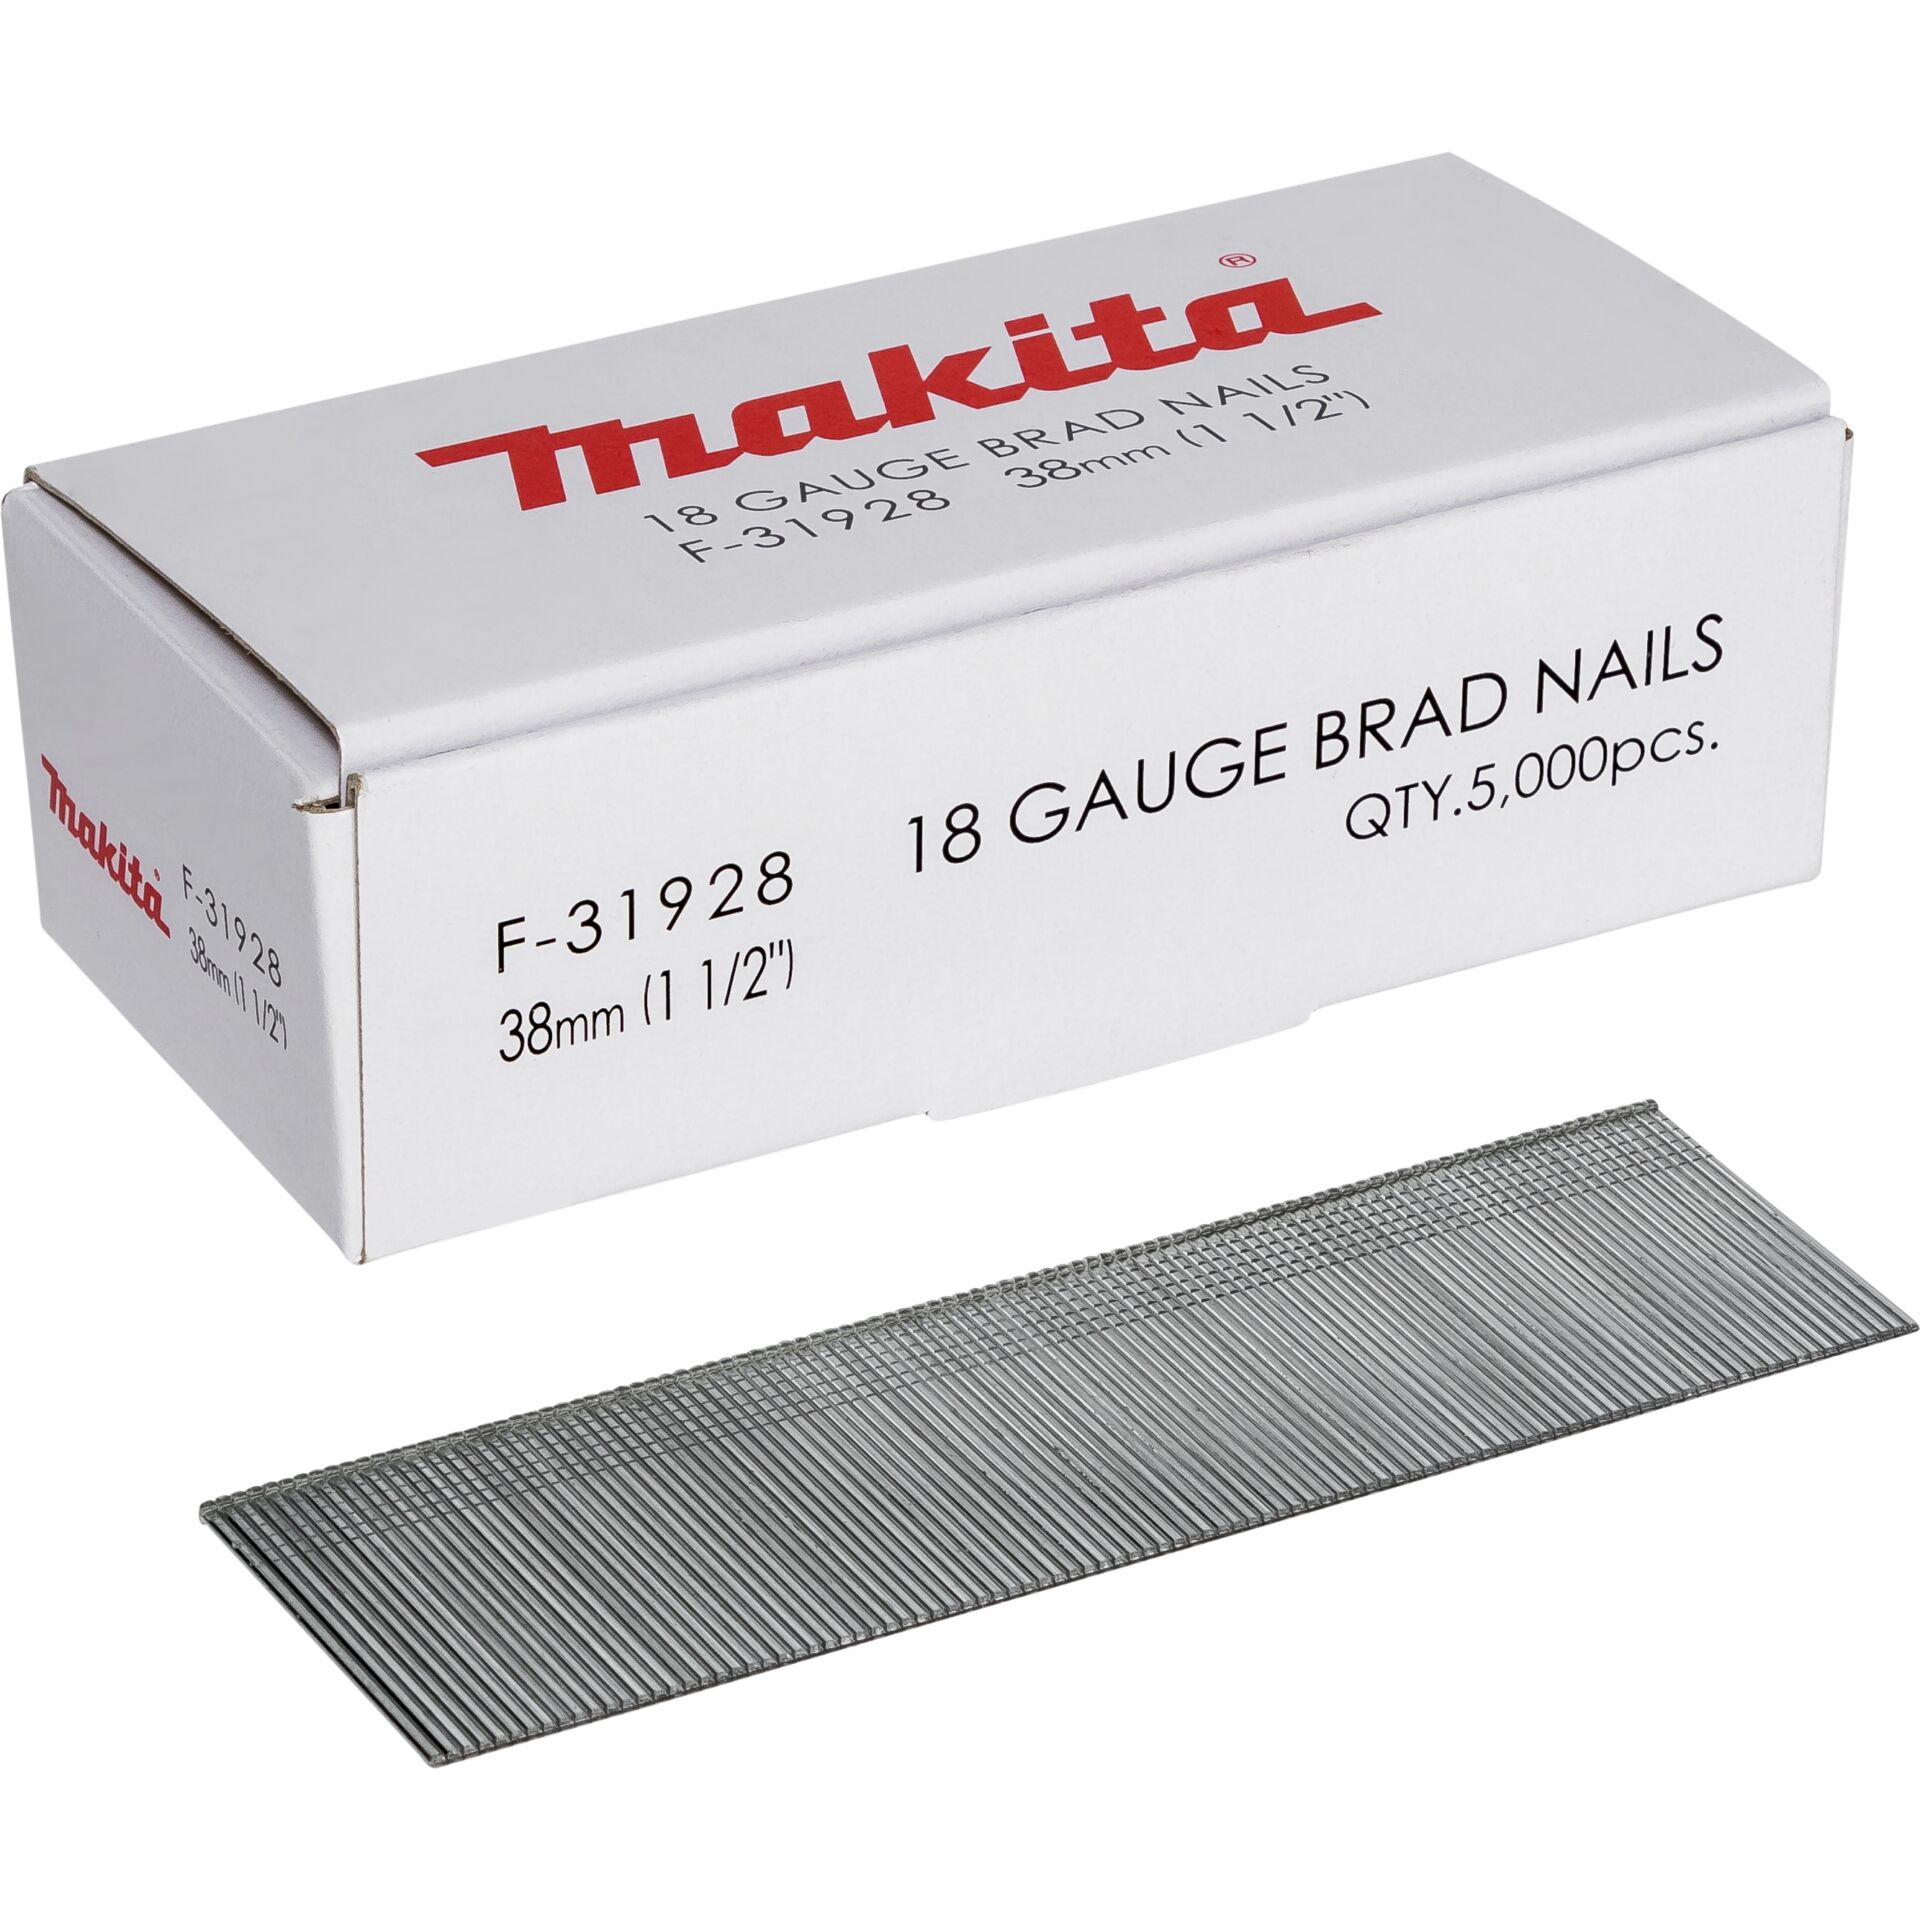 Makita Gauge Brad Nails 1,2x38mm F-31928  5000 pcs.